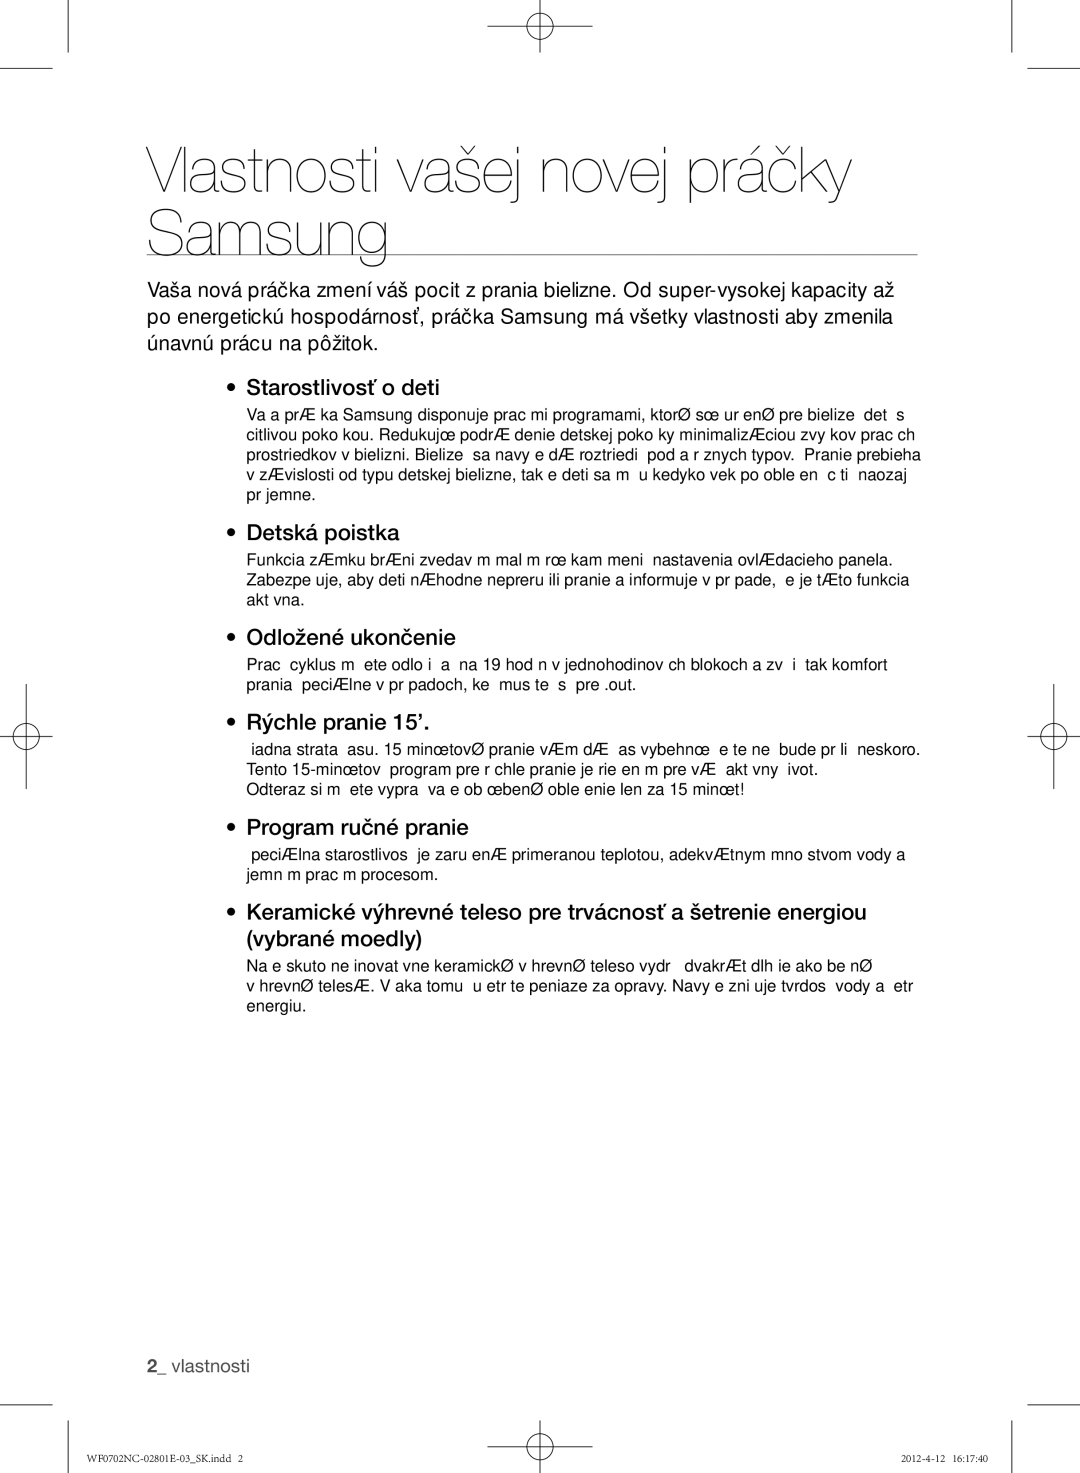 Samsung WF0702NCW/XEH manual Vlastnosti vašej novej práčky Samsung, Detská poistka, Odložené ukončenie, Rýchle pranie 15’ 